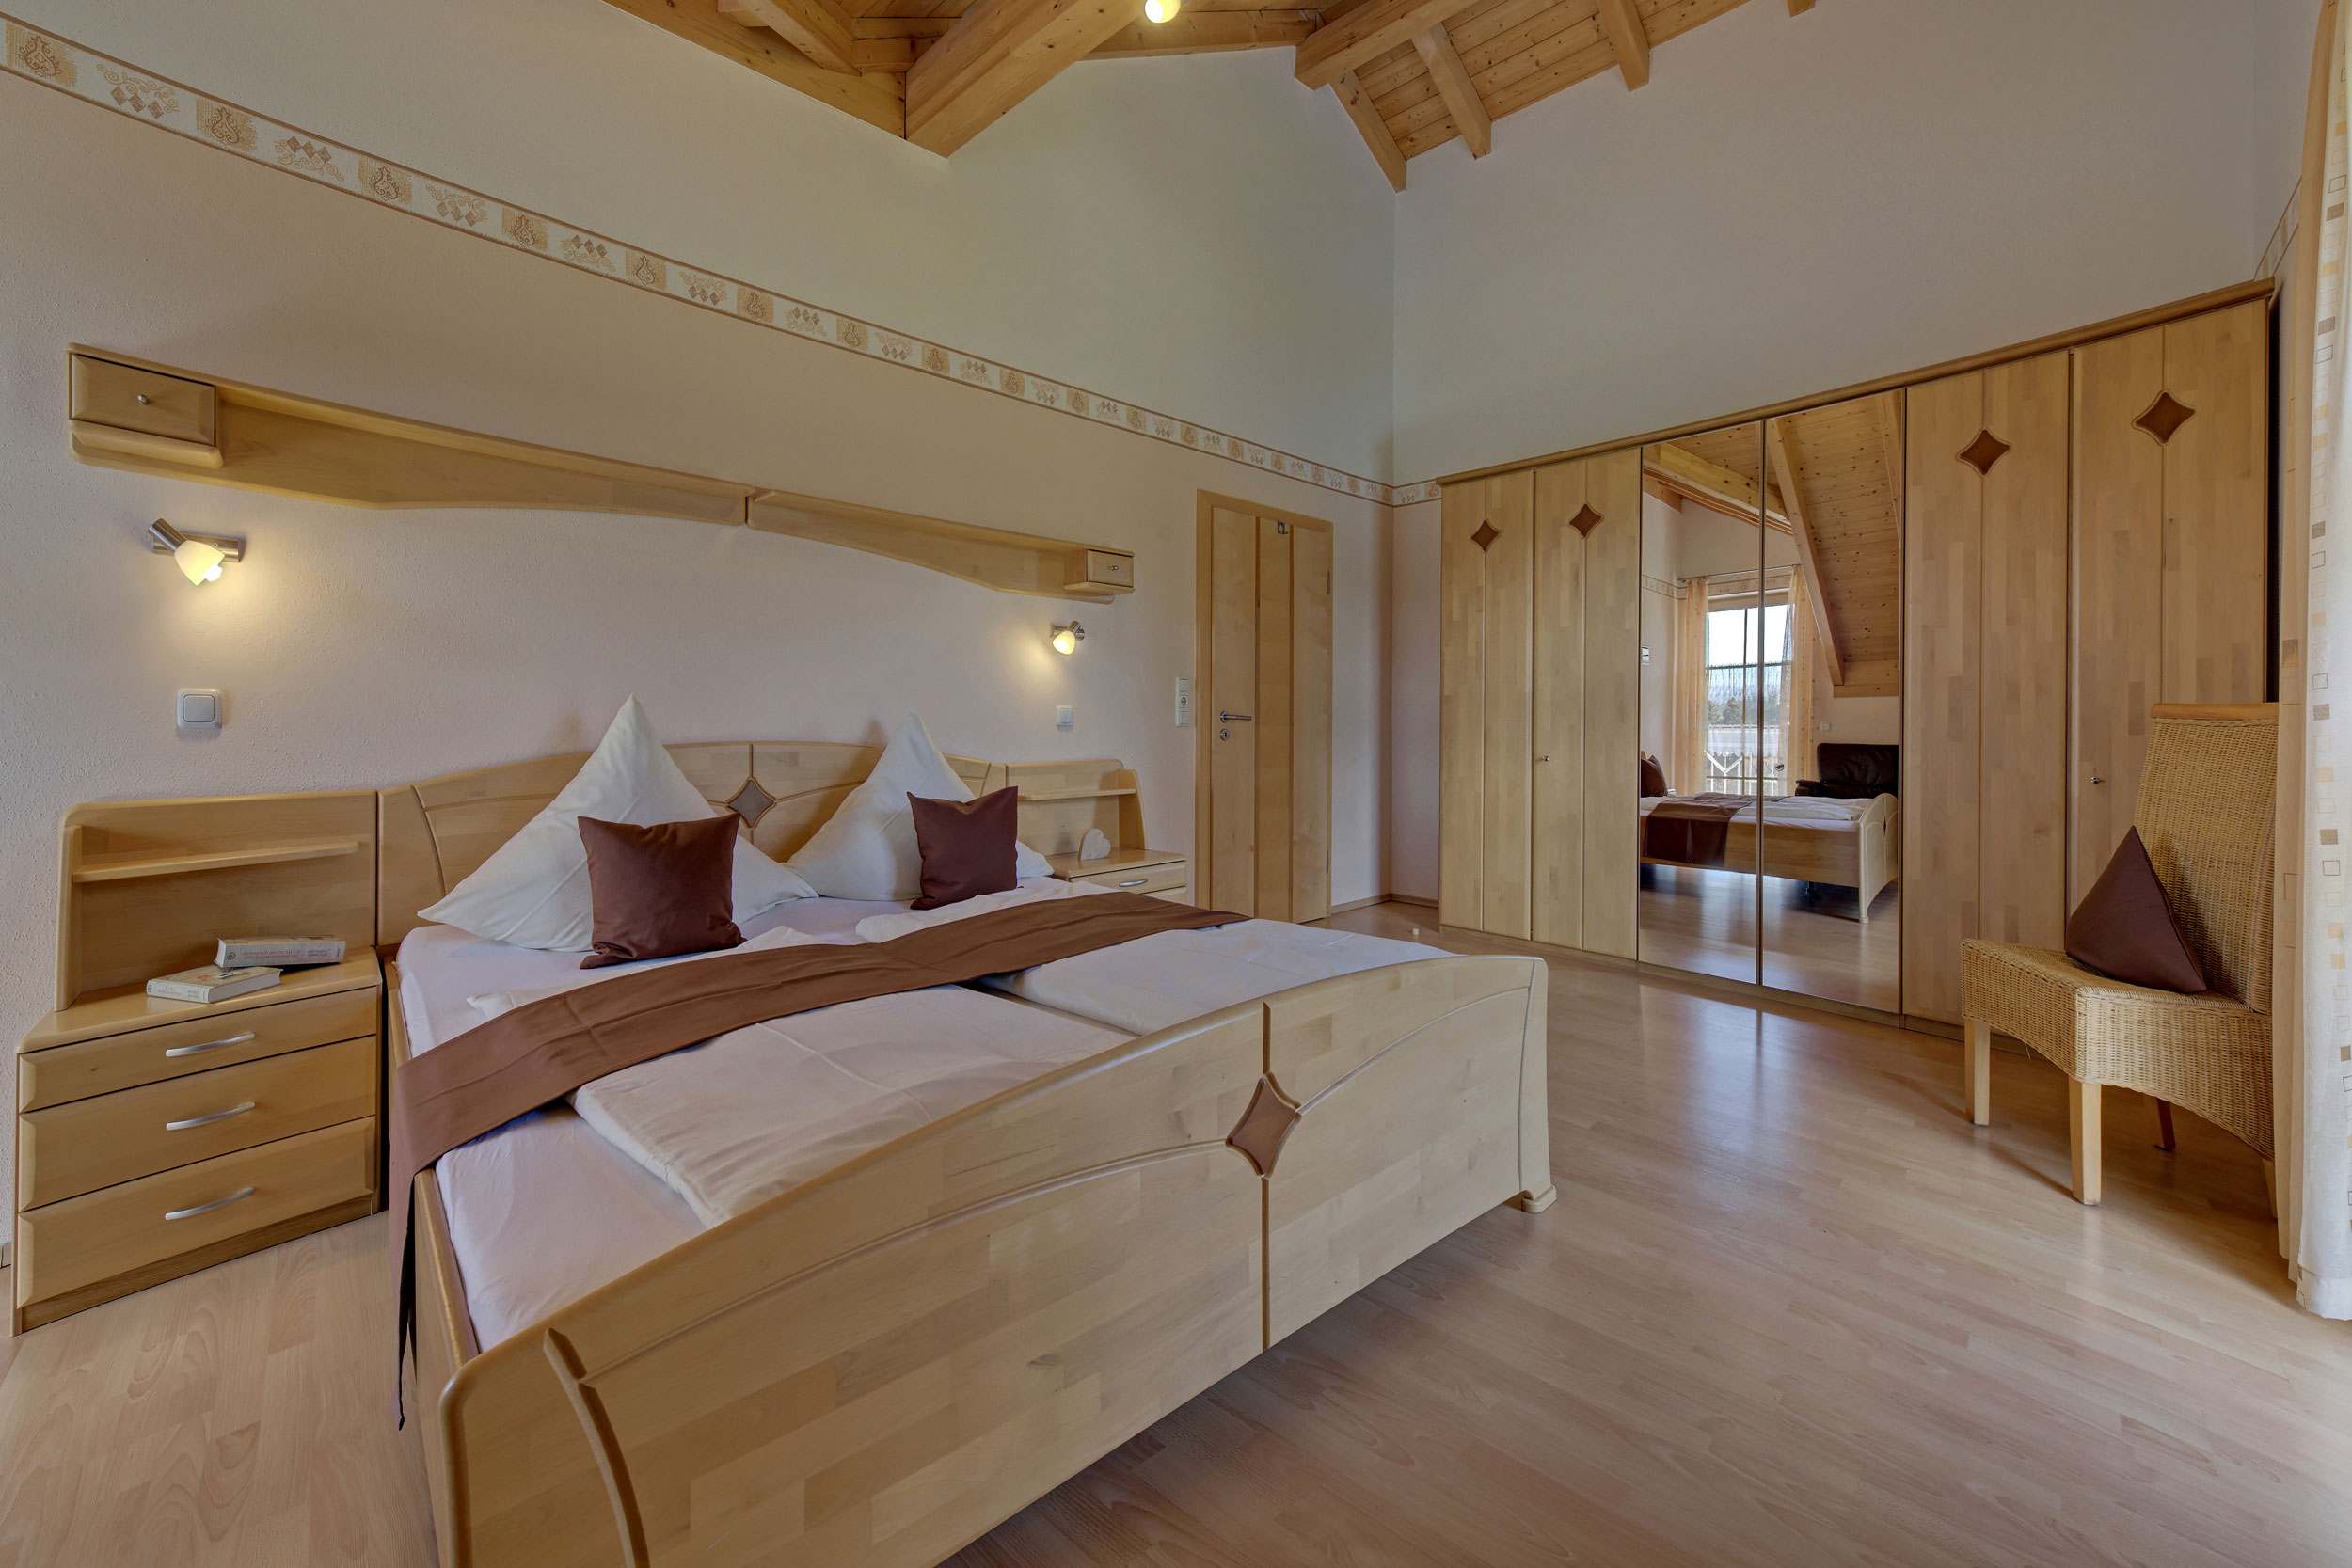 großes Schlafzimmer - Ferienhof in Bayern